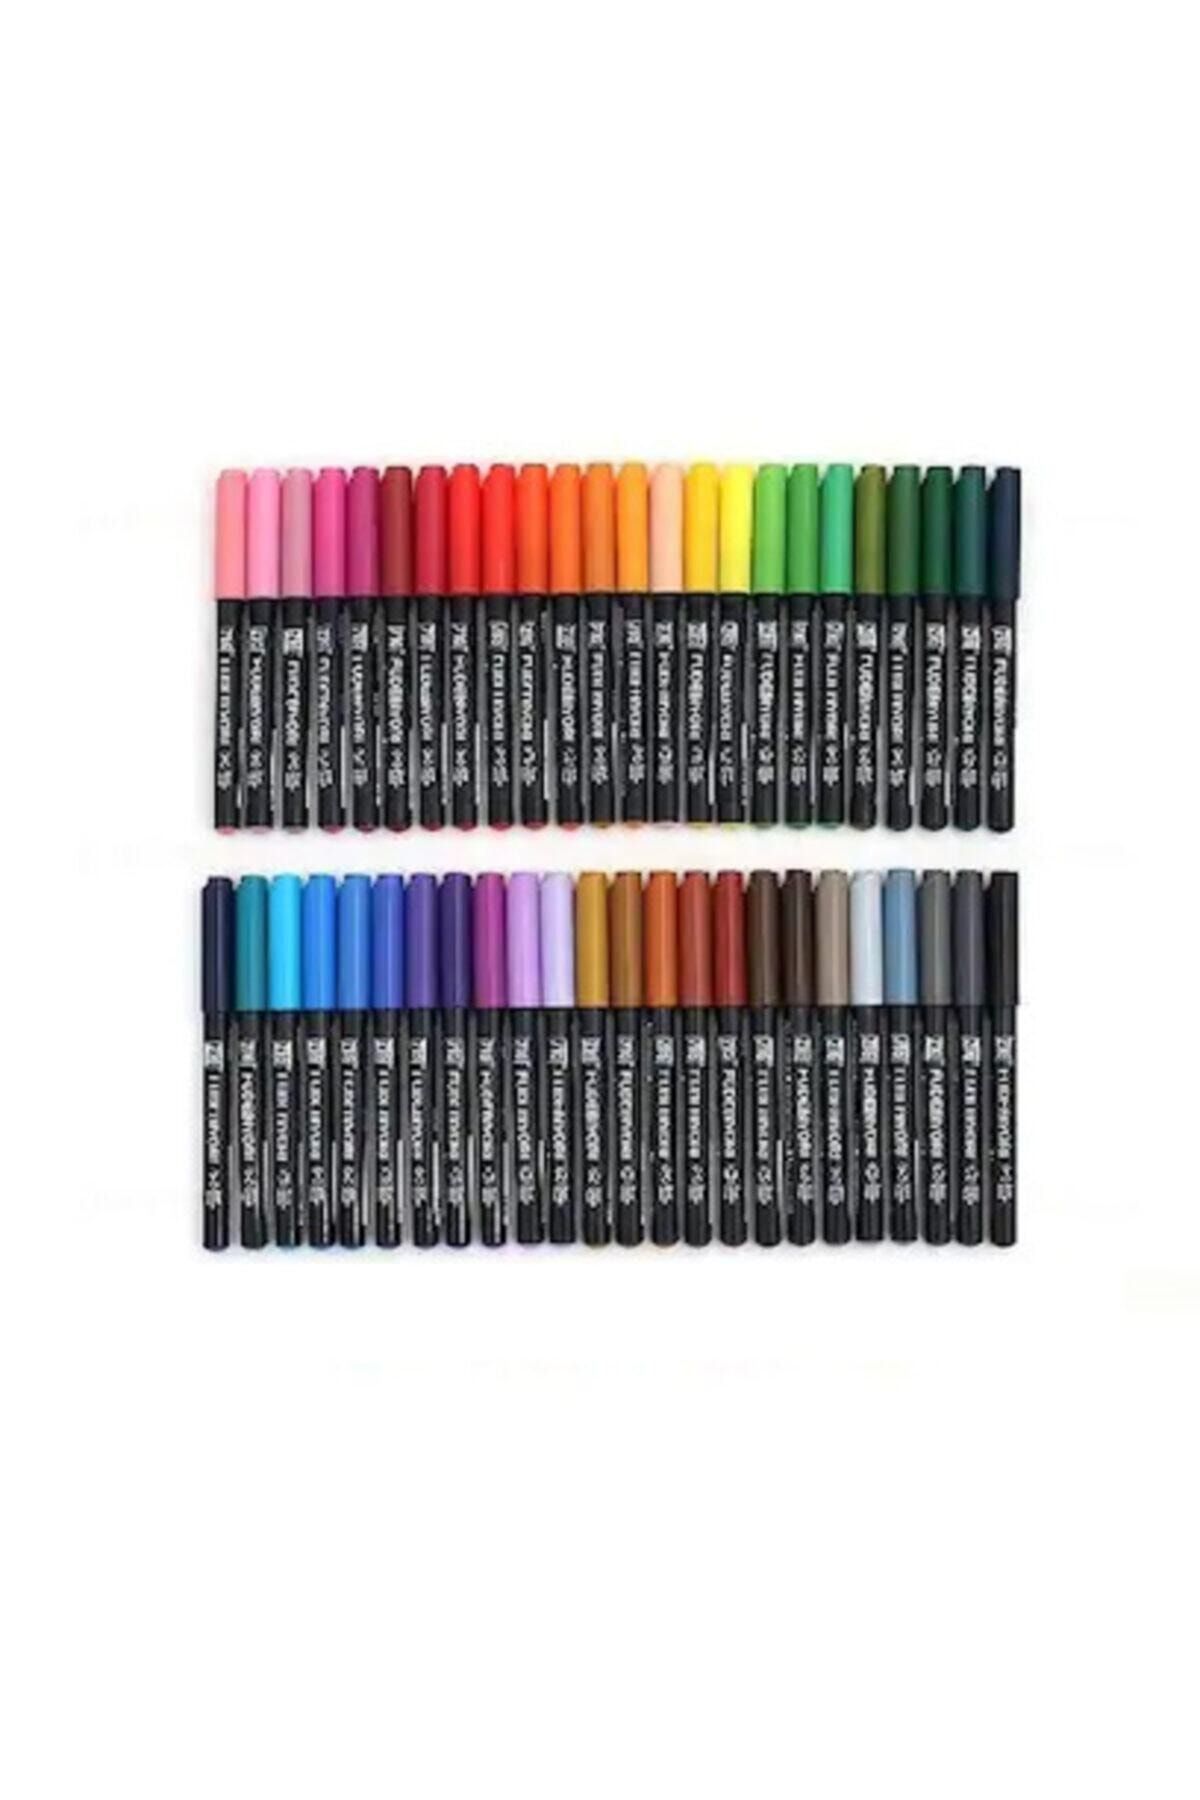 Zig Fudebiyori Brush Pen Fırça Uçlu Kalem Seti 48 Renk